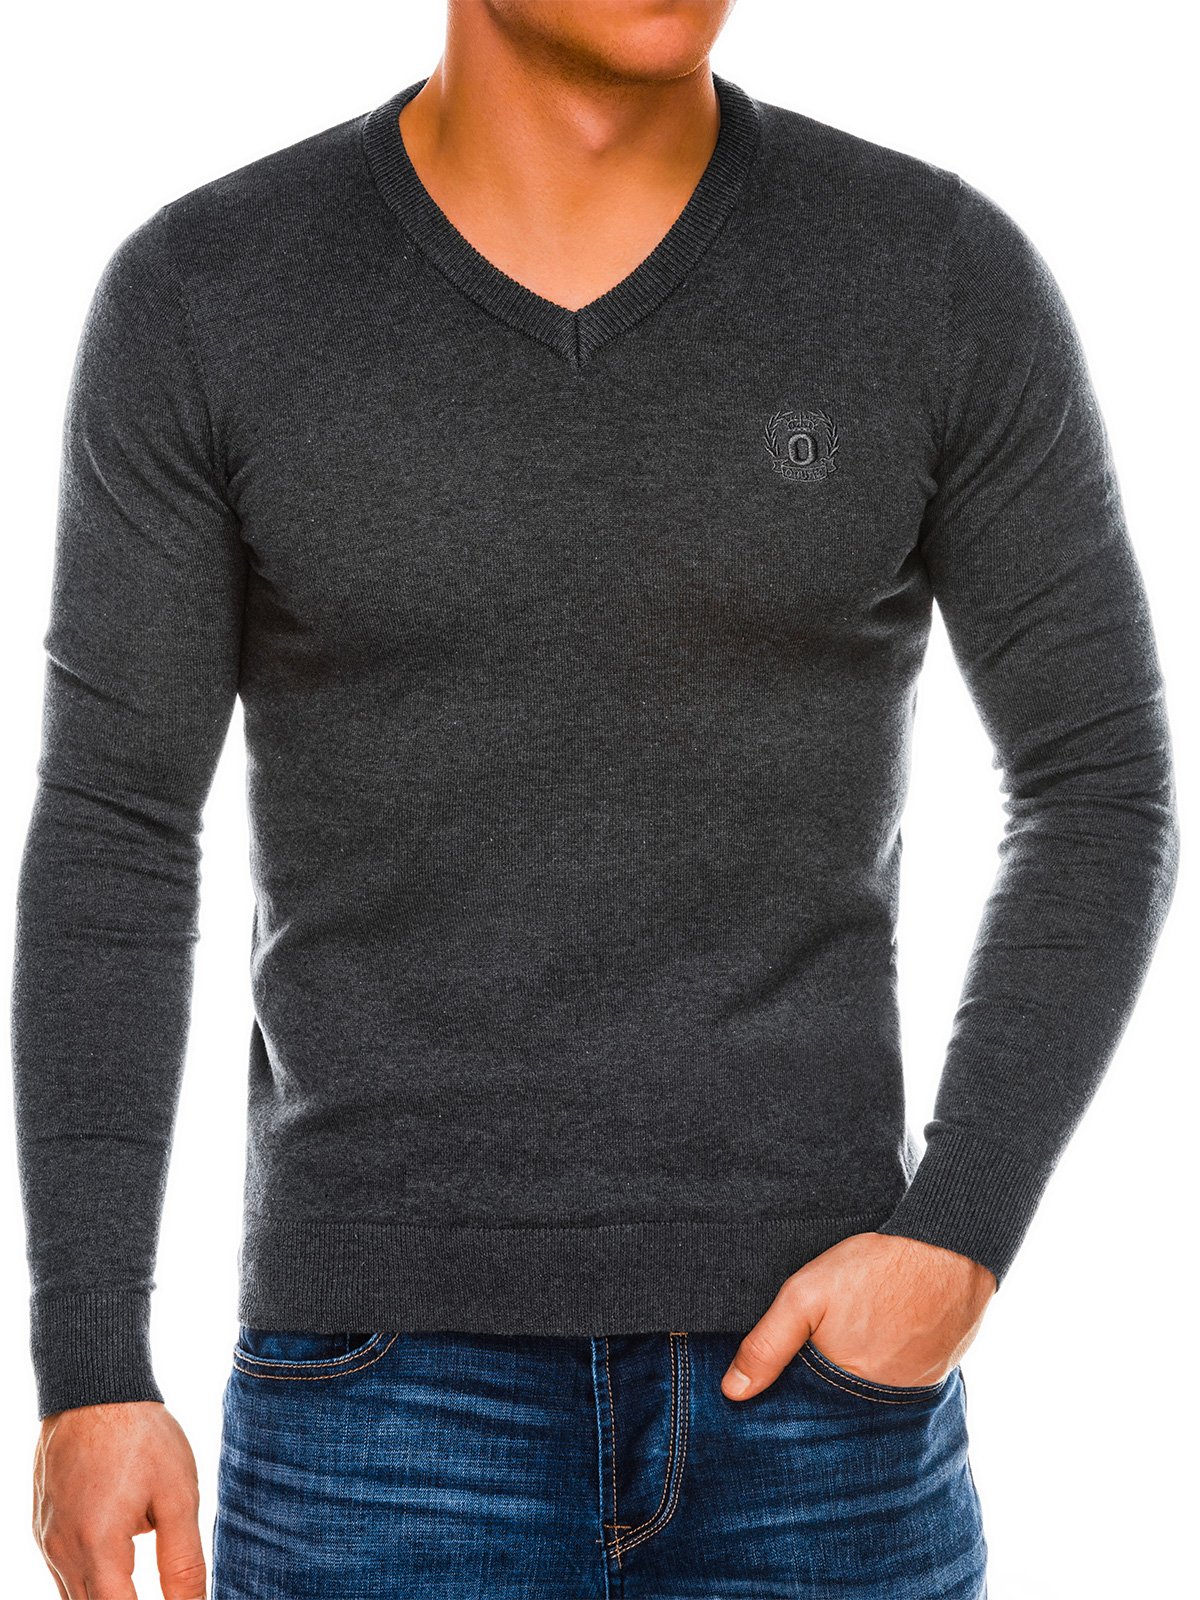 Men's sweater E74 - dark grey/melange | MODONE wholesale - Clothing For Men